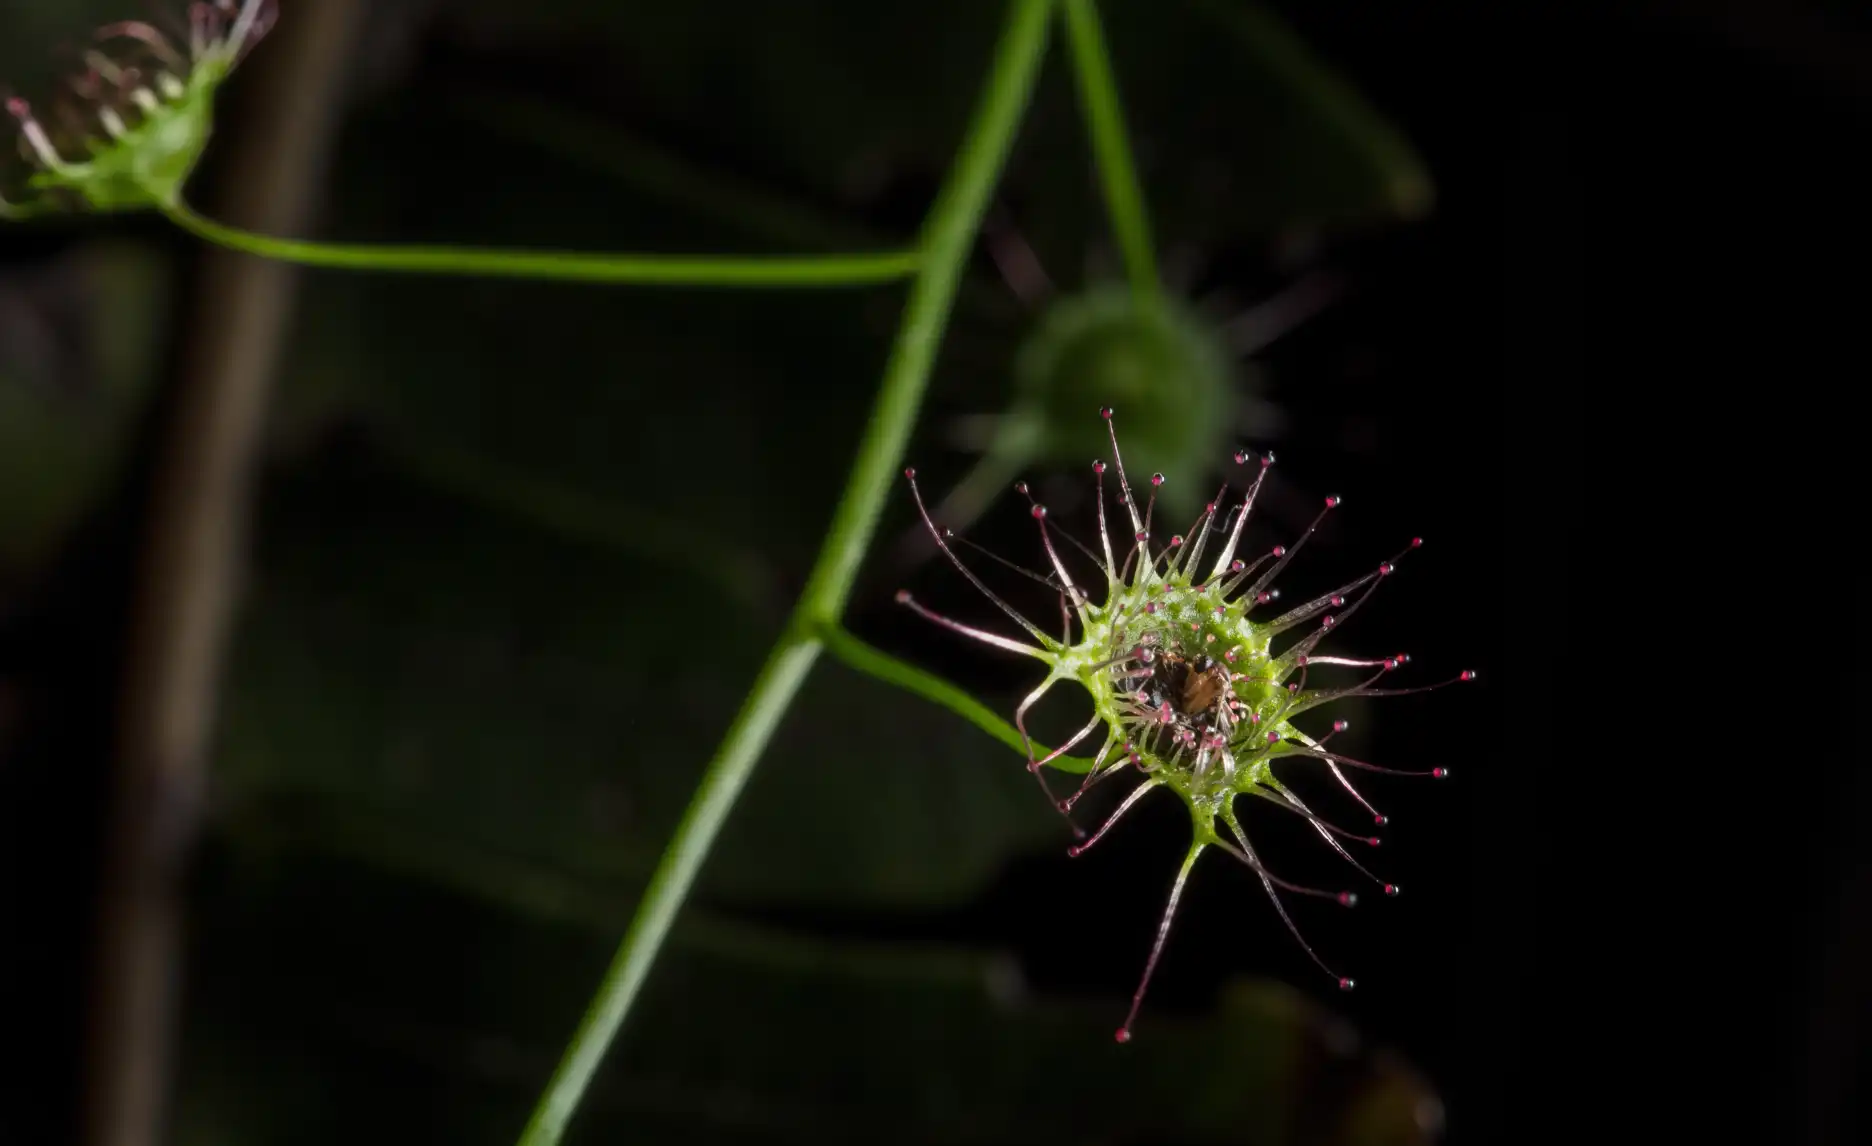 Drosera auriculata leaf detail